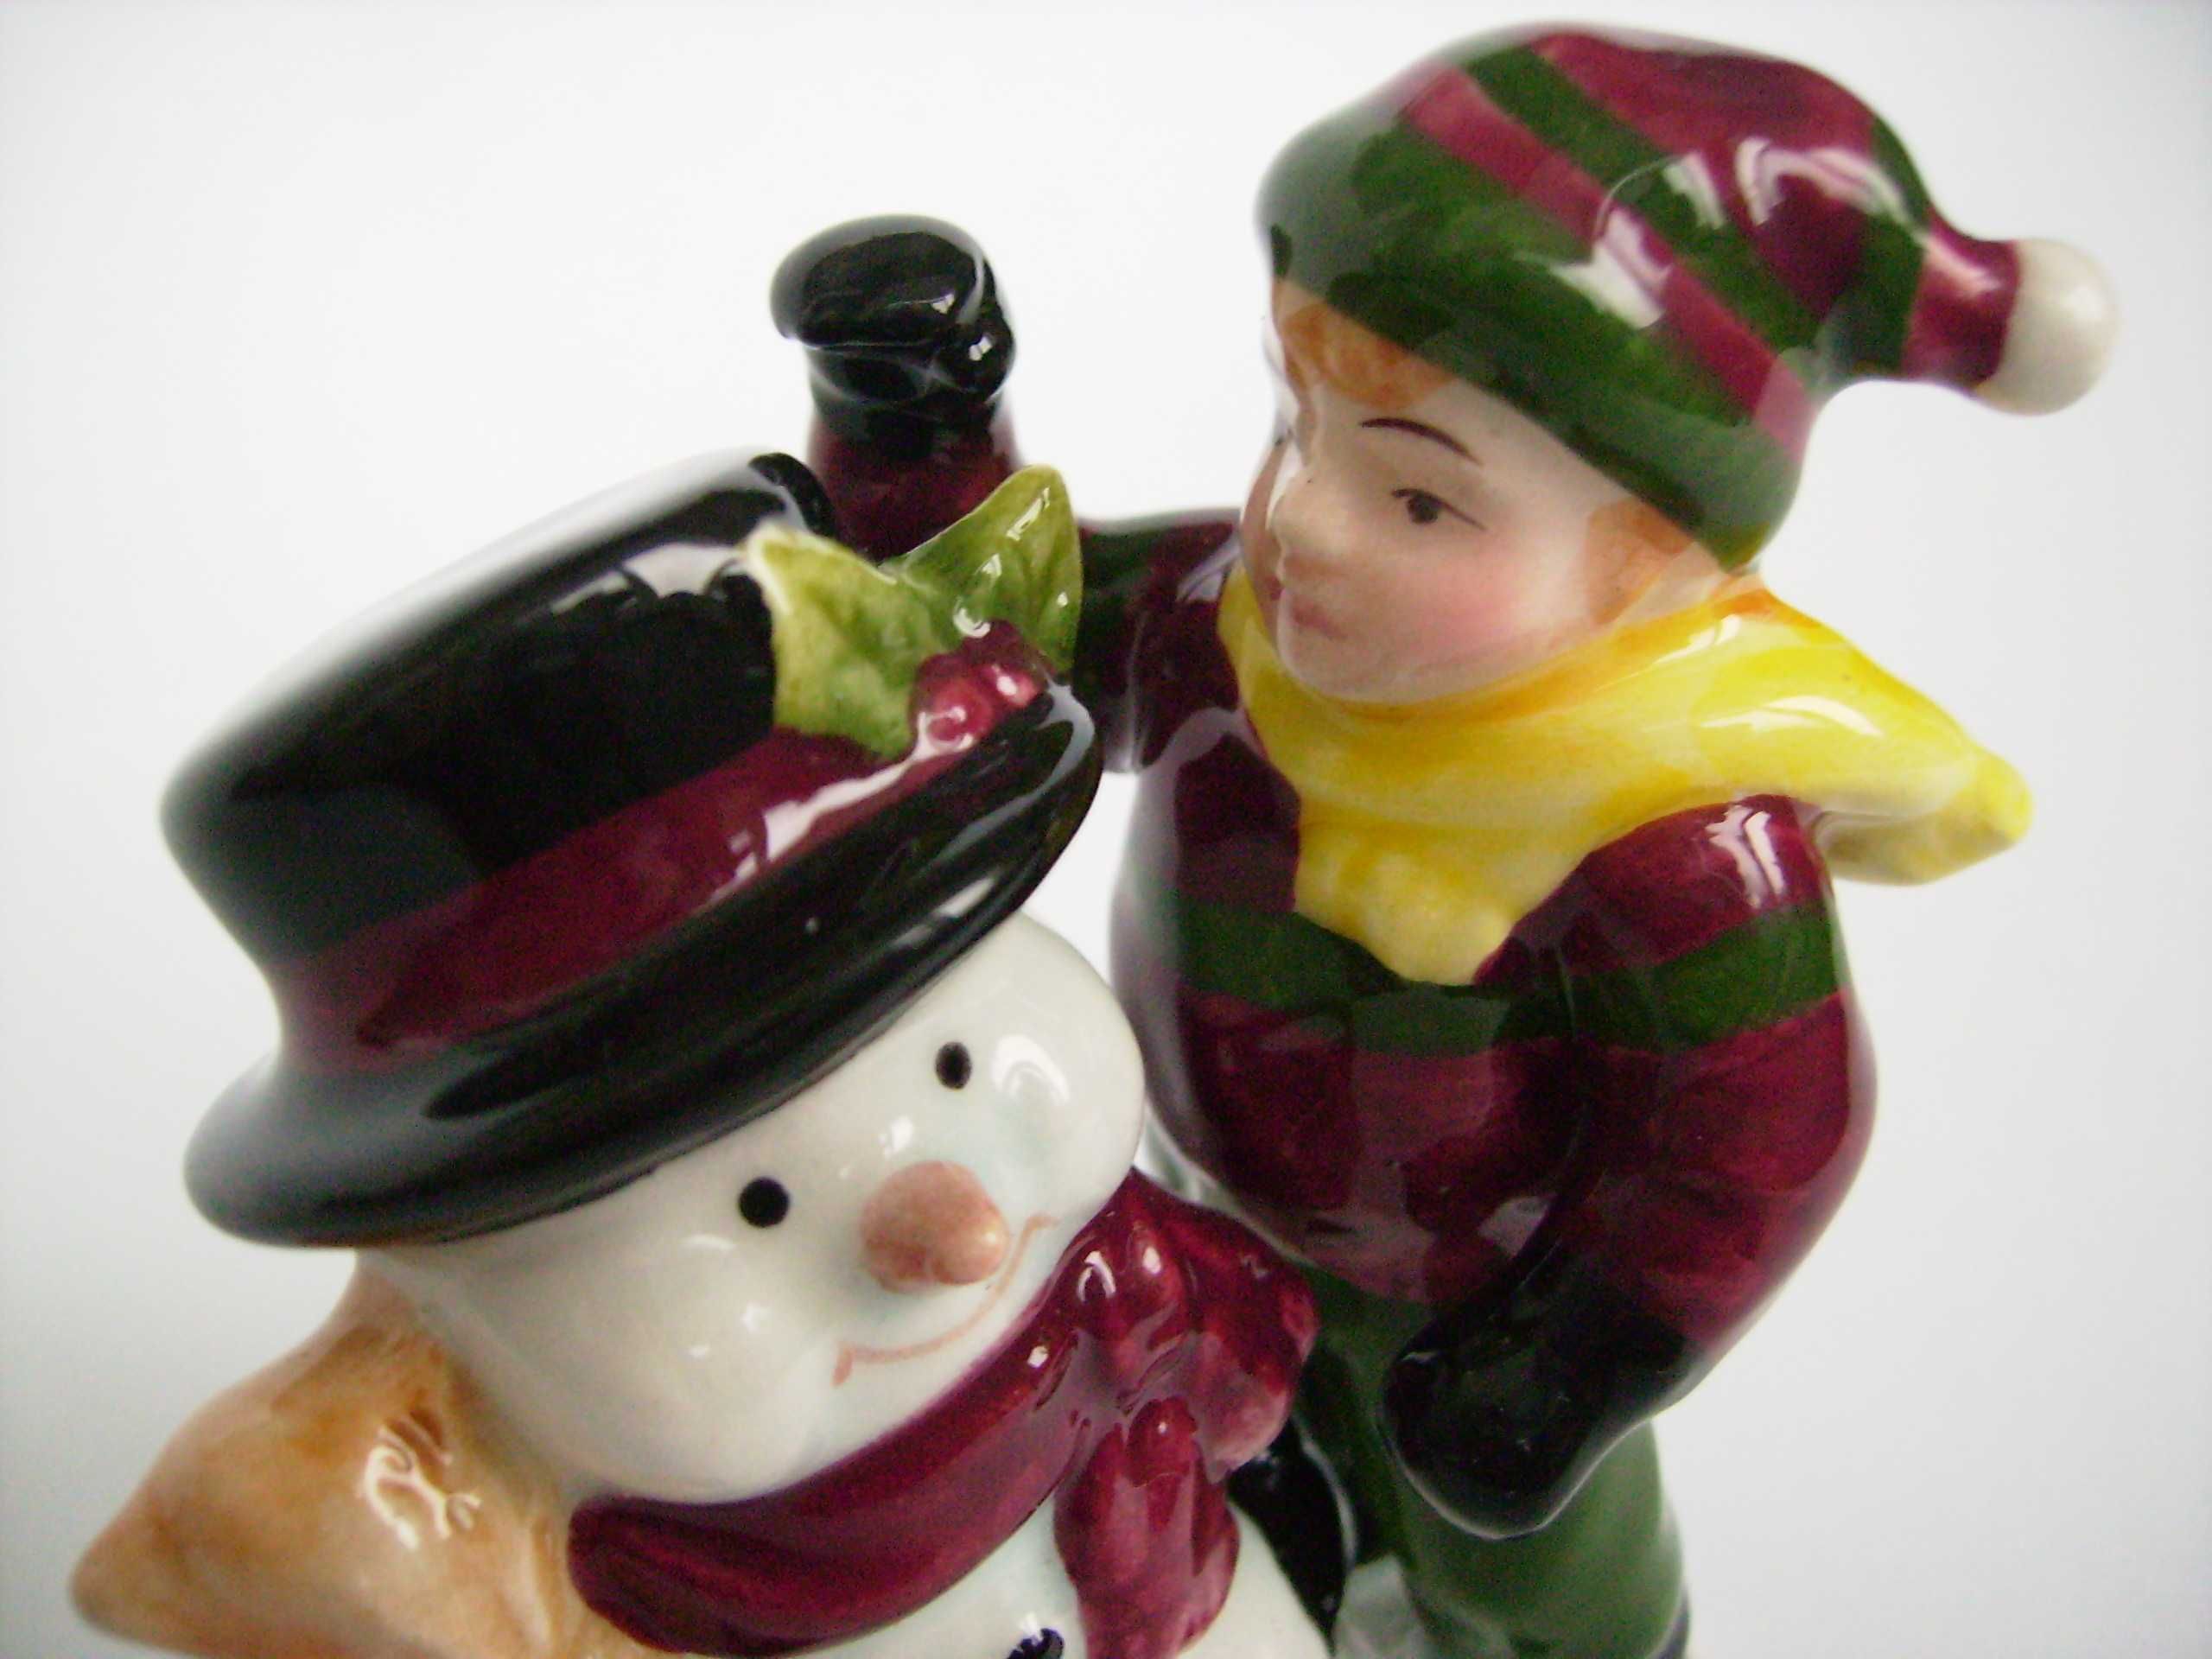 Фарфоровая статуэтка Aynsley Snowman & Boy Эйнсли Снеговик и Мальчик